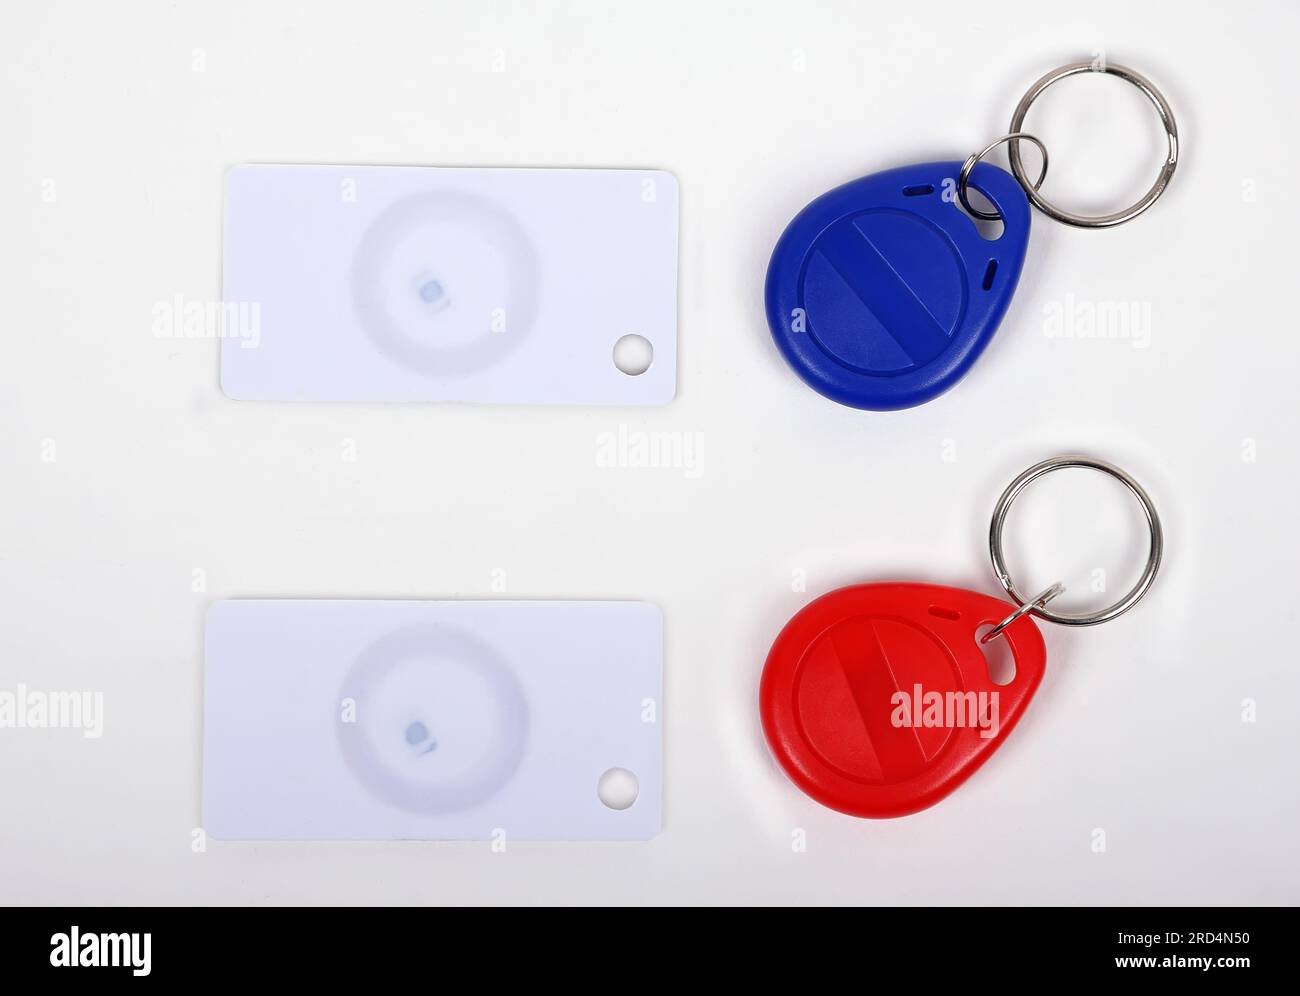 zwei RFID-Karten und Schlüsselanhänger auf weißem Hintergrund Stockfoto